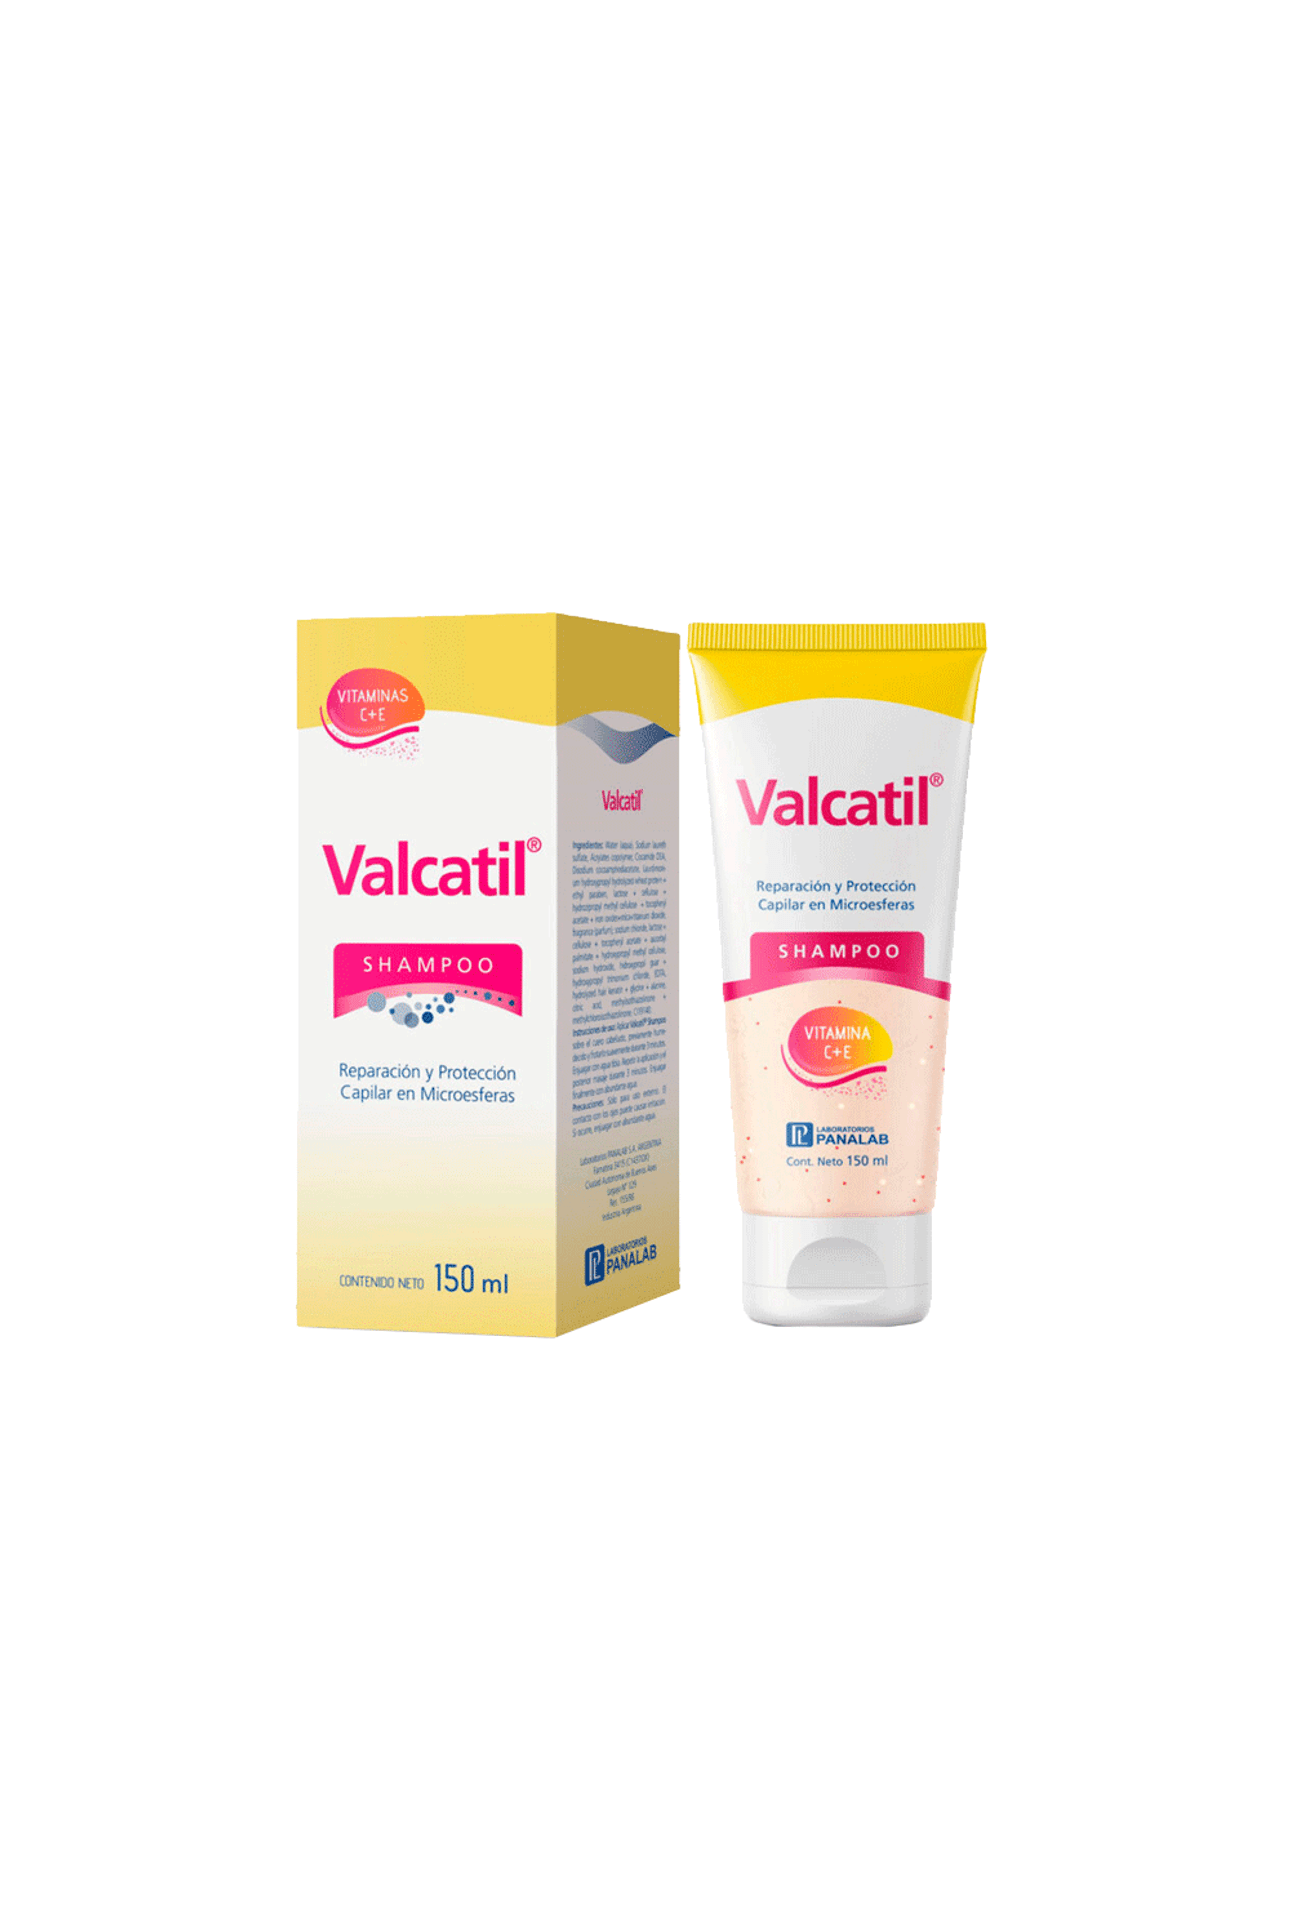 Shampoo-Valcatil-x-300-ml-Valcatil